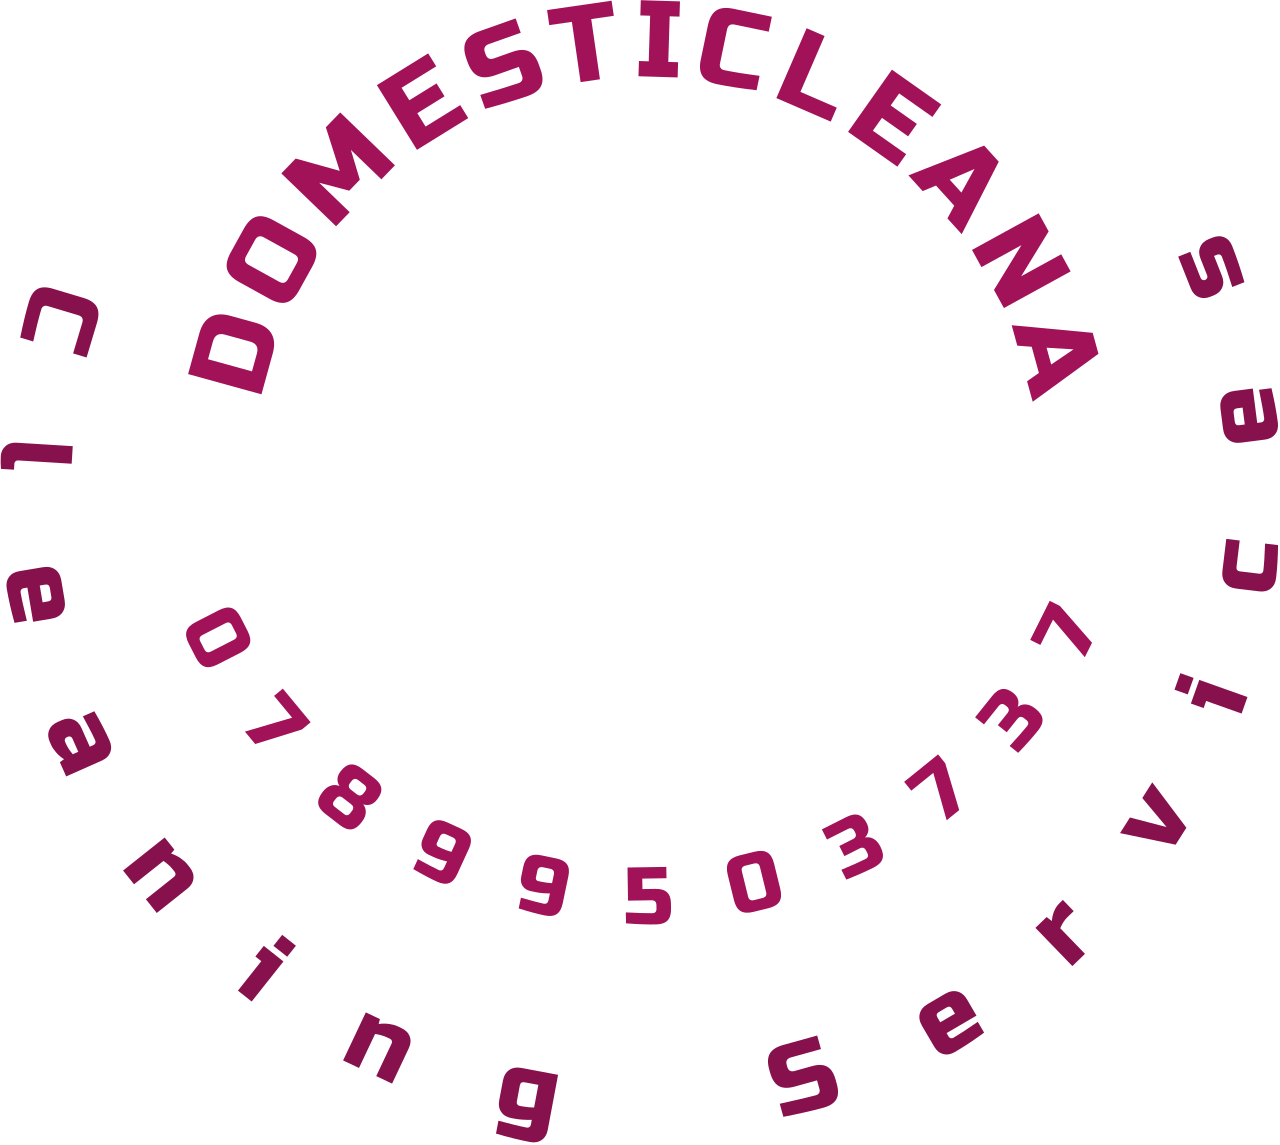 DOMESTICLEANA's logo